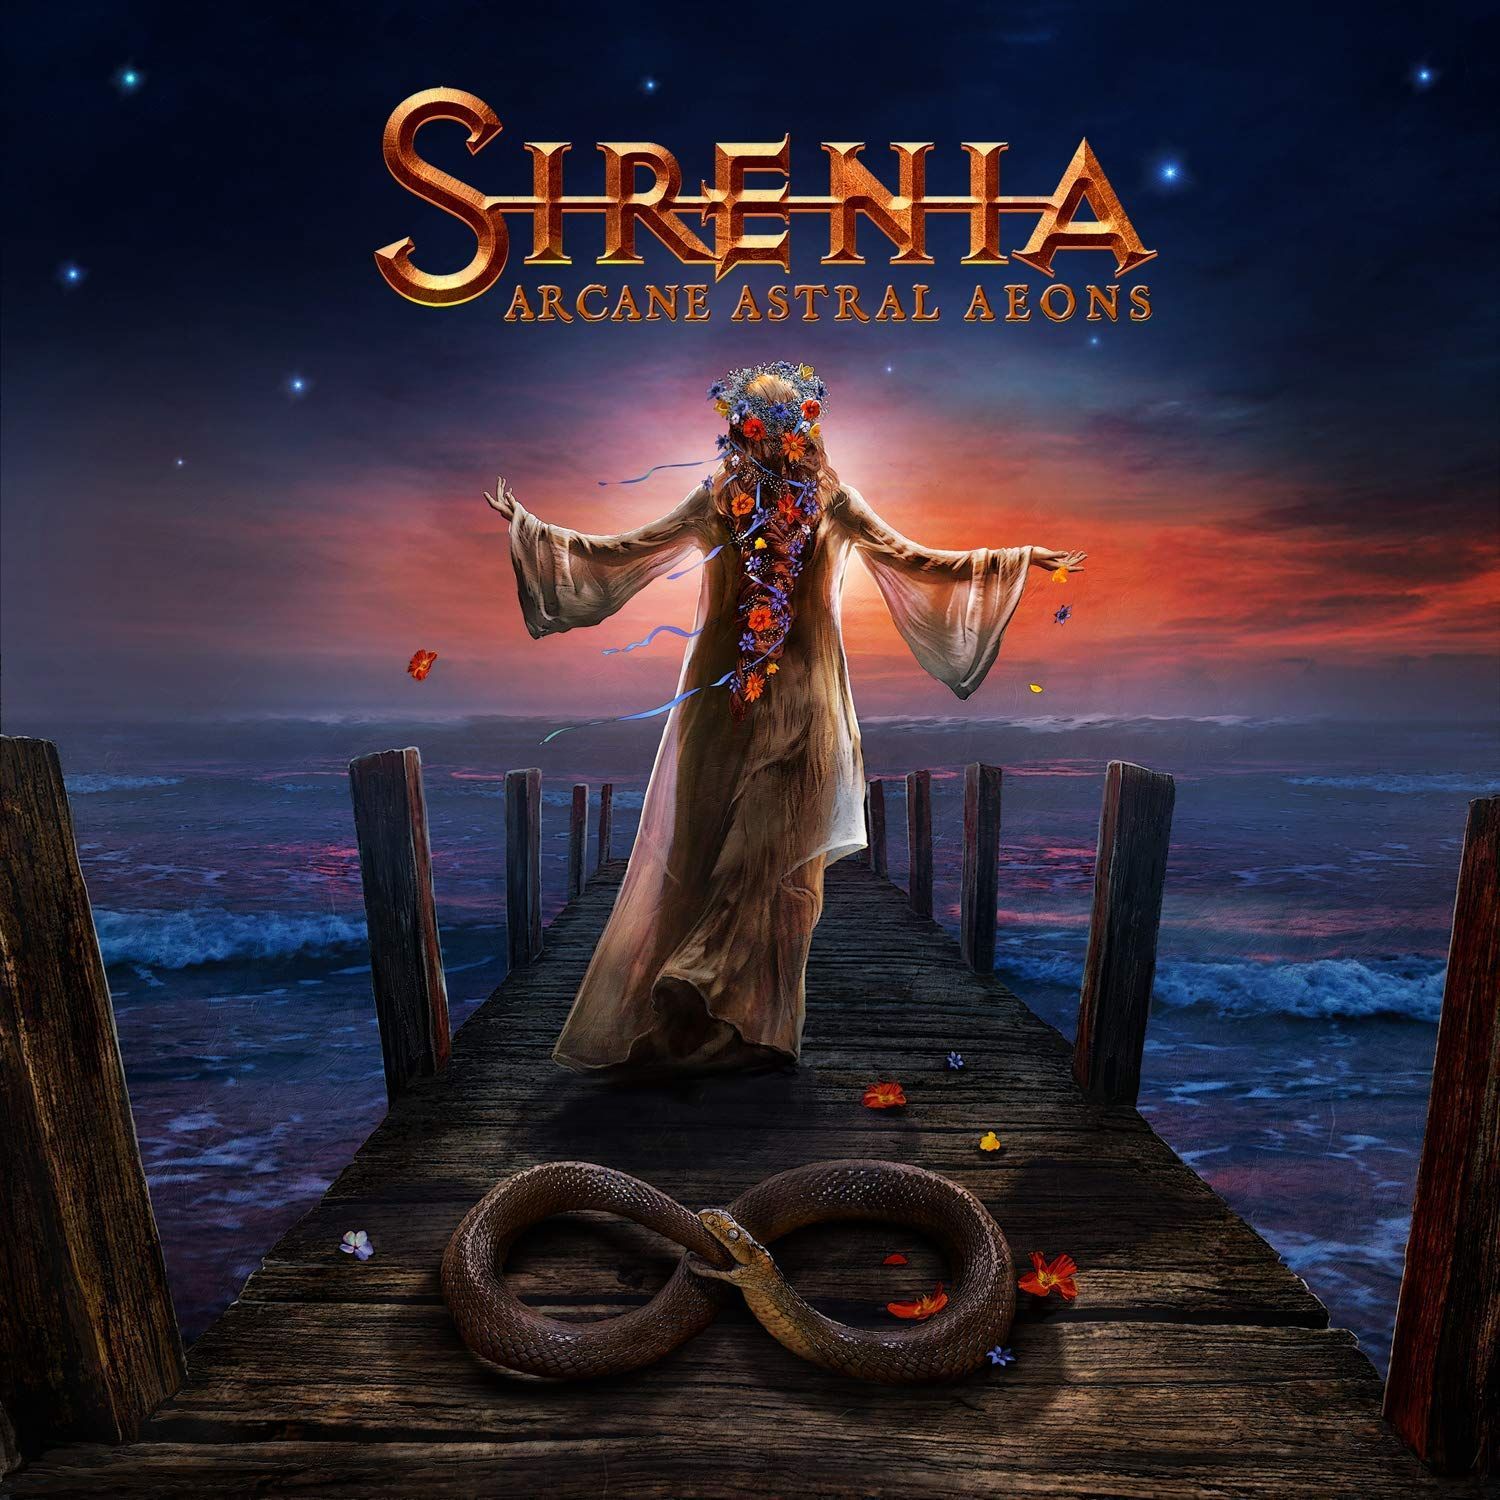 Sirenia - Into The Night (clip)